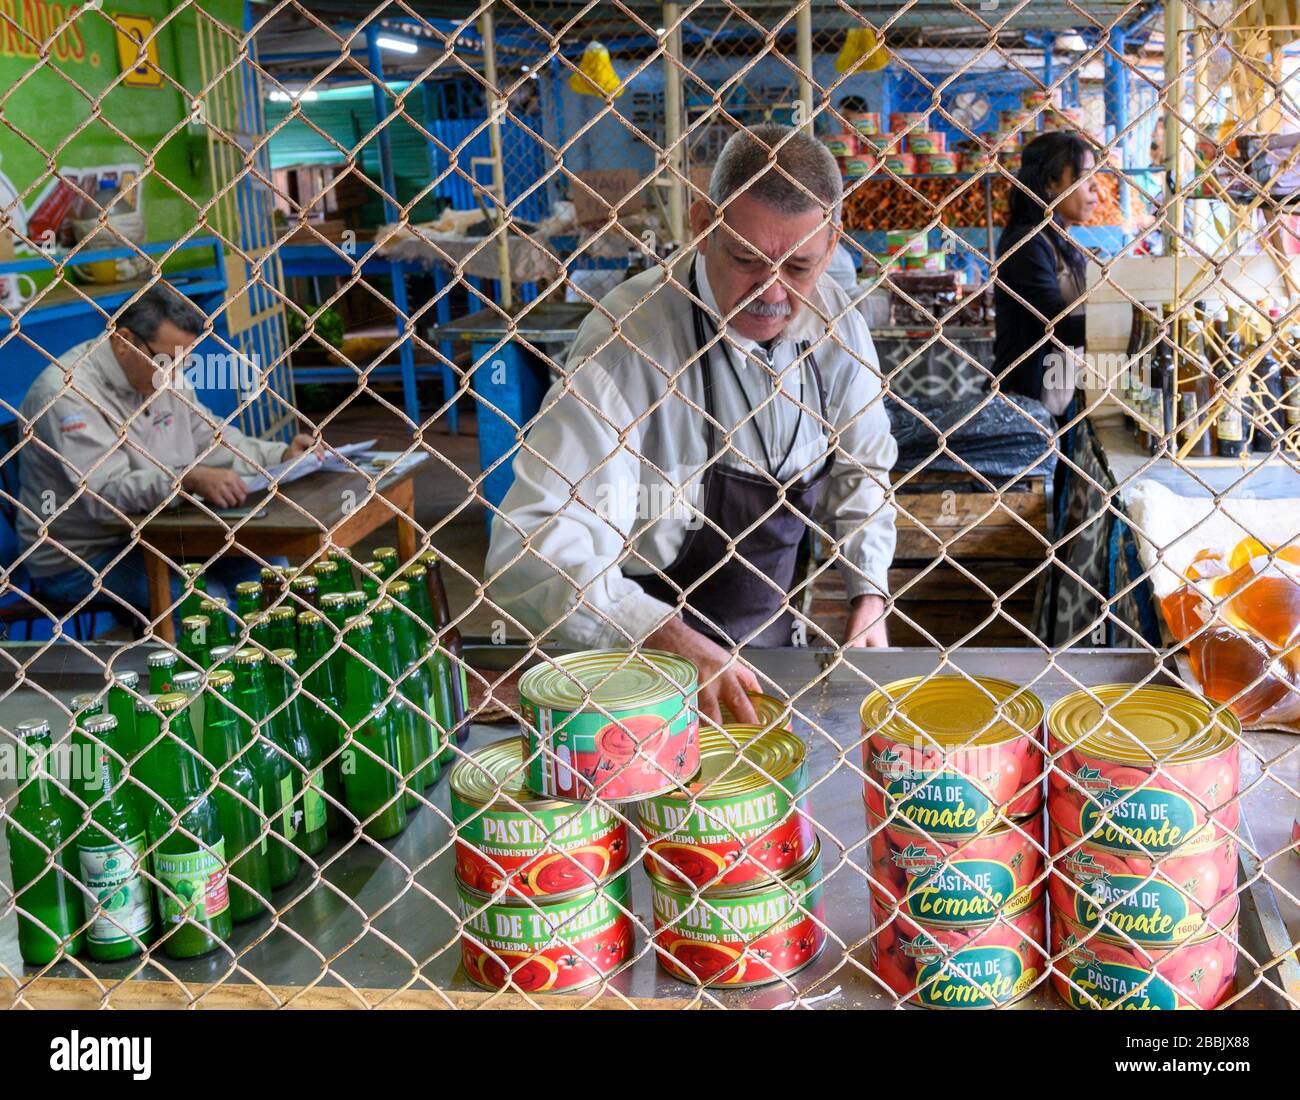 Lebensmittelmarkt, Vedado, Havanna, Kuba Stockfoto